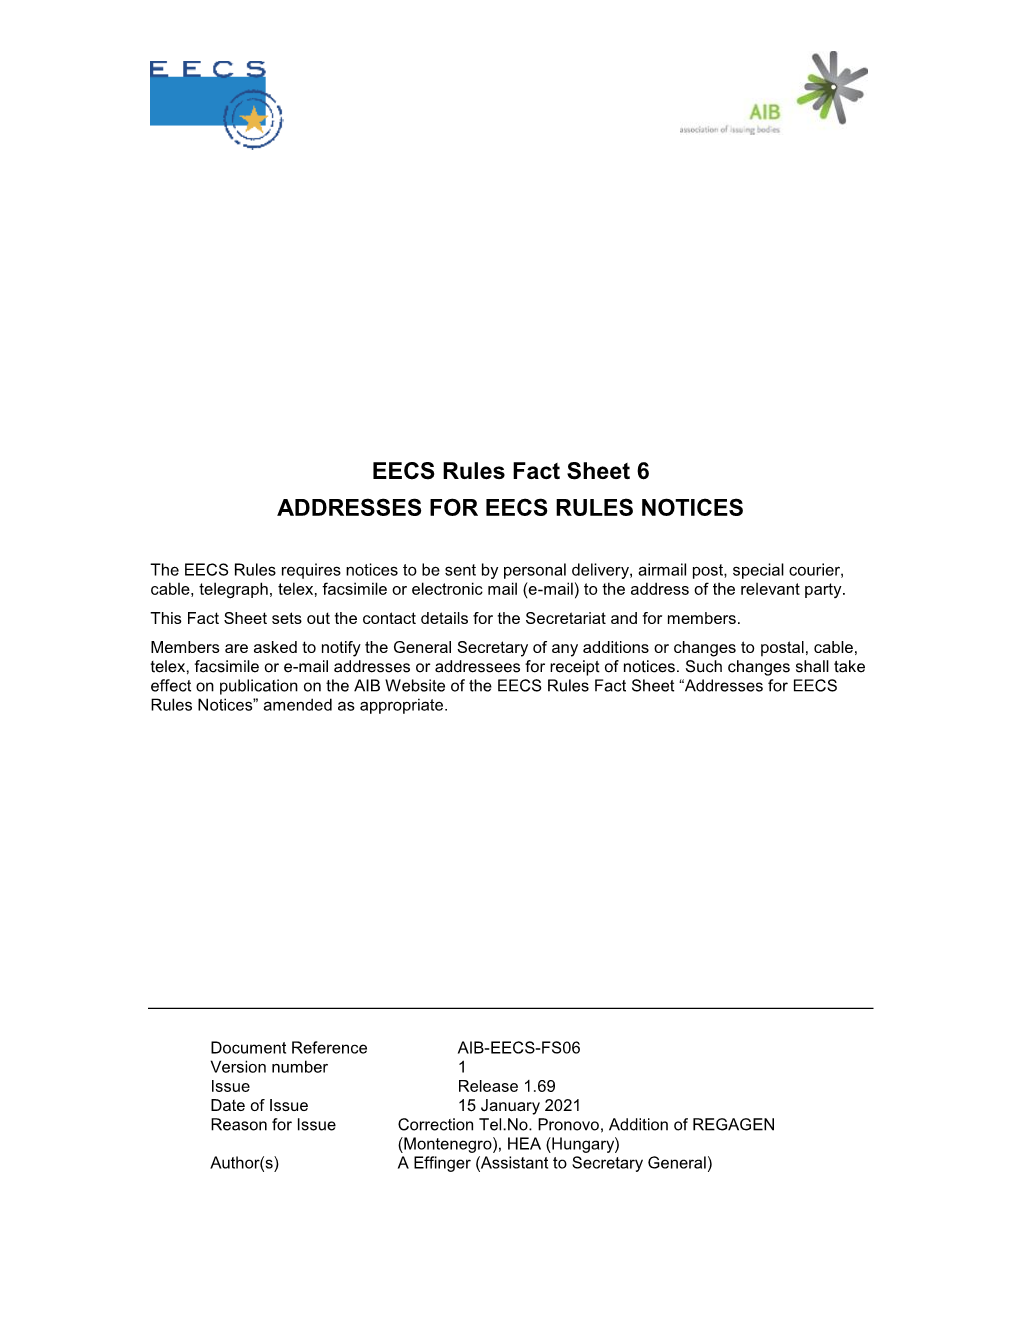 EECS Fact Sheet 6